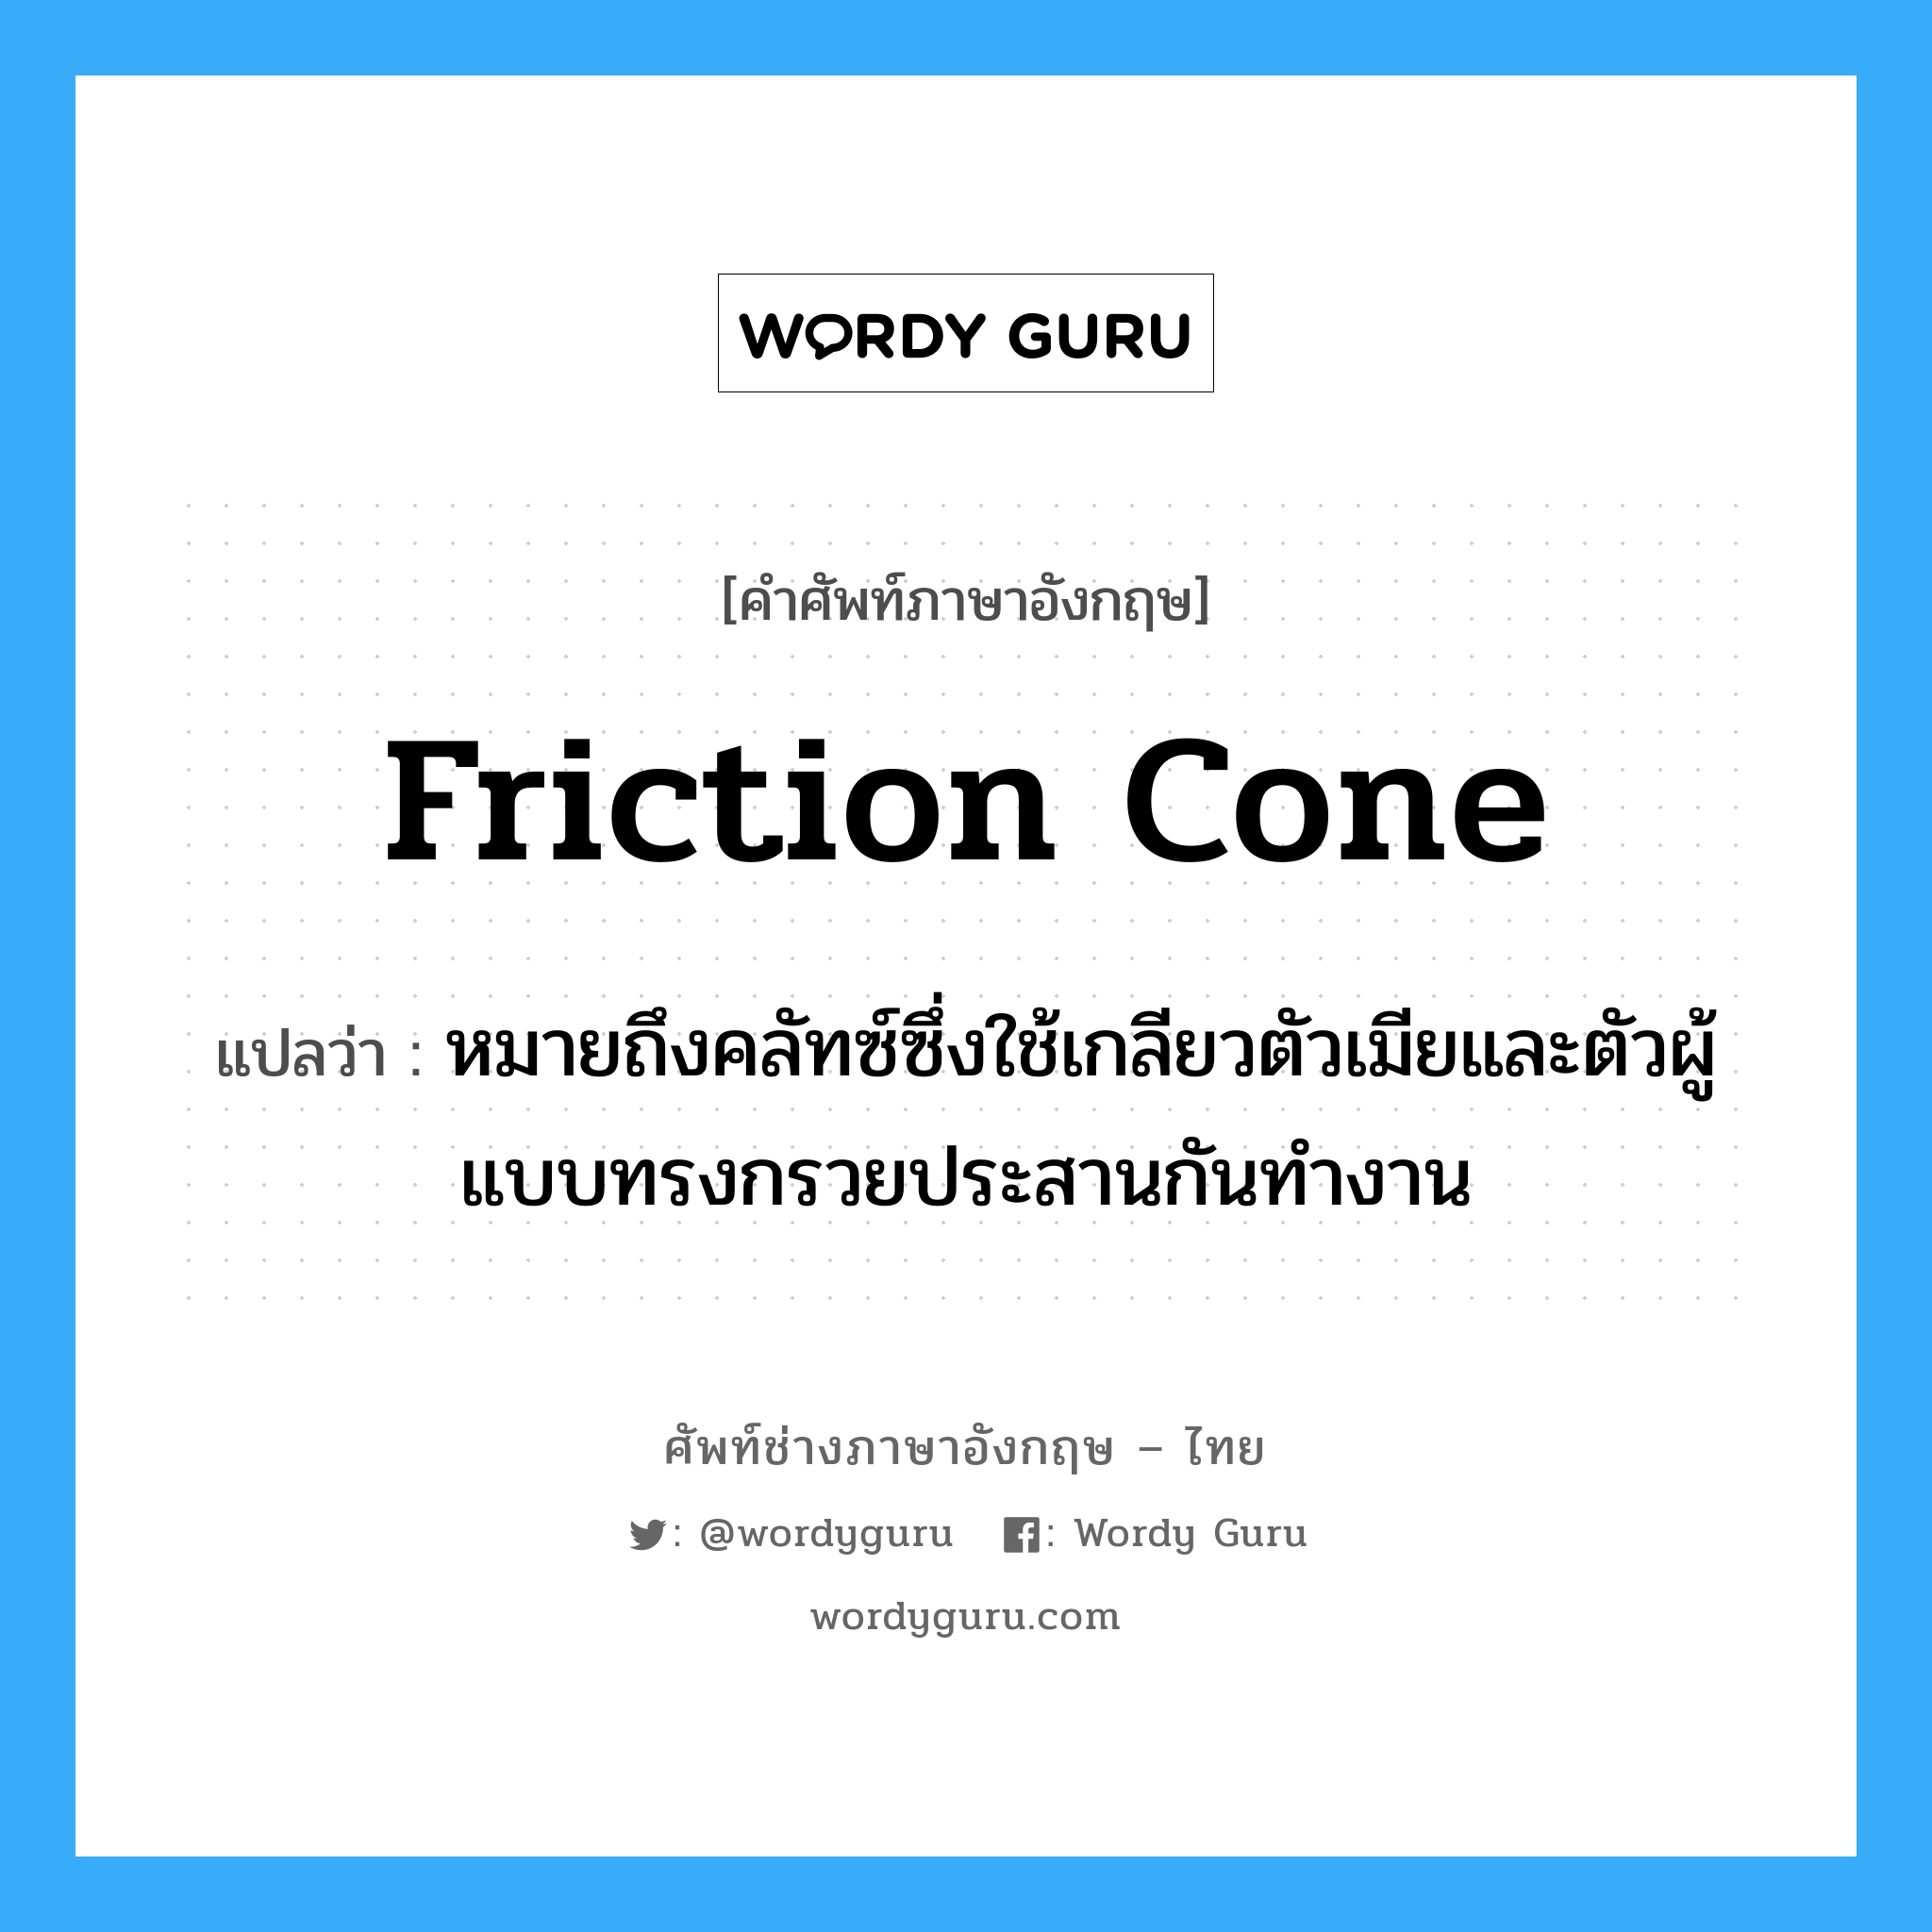 friction cone แปลว่า?, คำศัพท์ช่างภาษาอังกฤษ - ไทย friction cone คำศัพท์ภาษาอังกฤษ friction cone แปลว่า หมายถึงคลัทซ์ซึ่งใช้เกลียวตัวเมียและตัวผู้แบบทรงกรวยประสานกันทำงาน